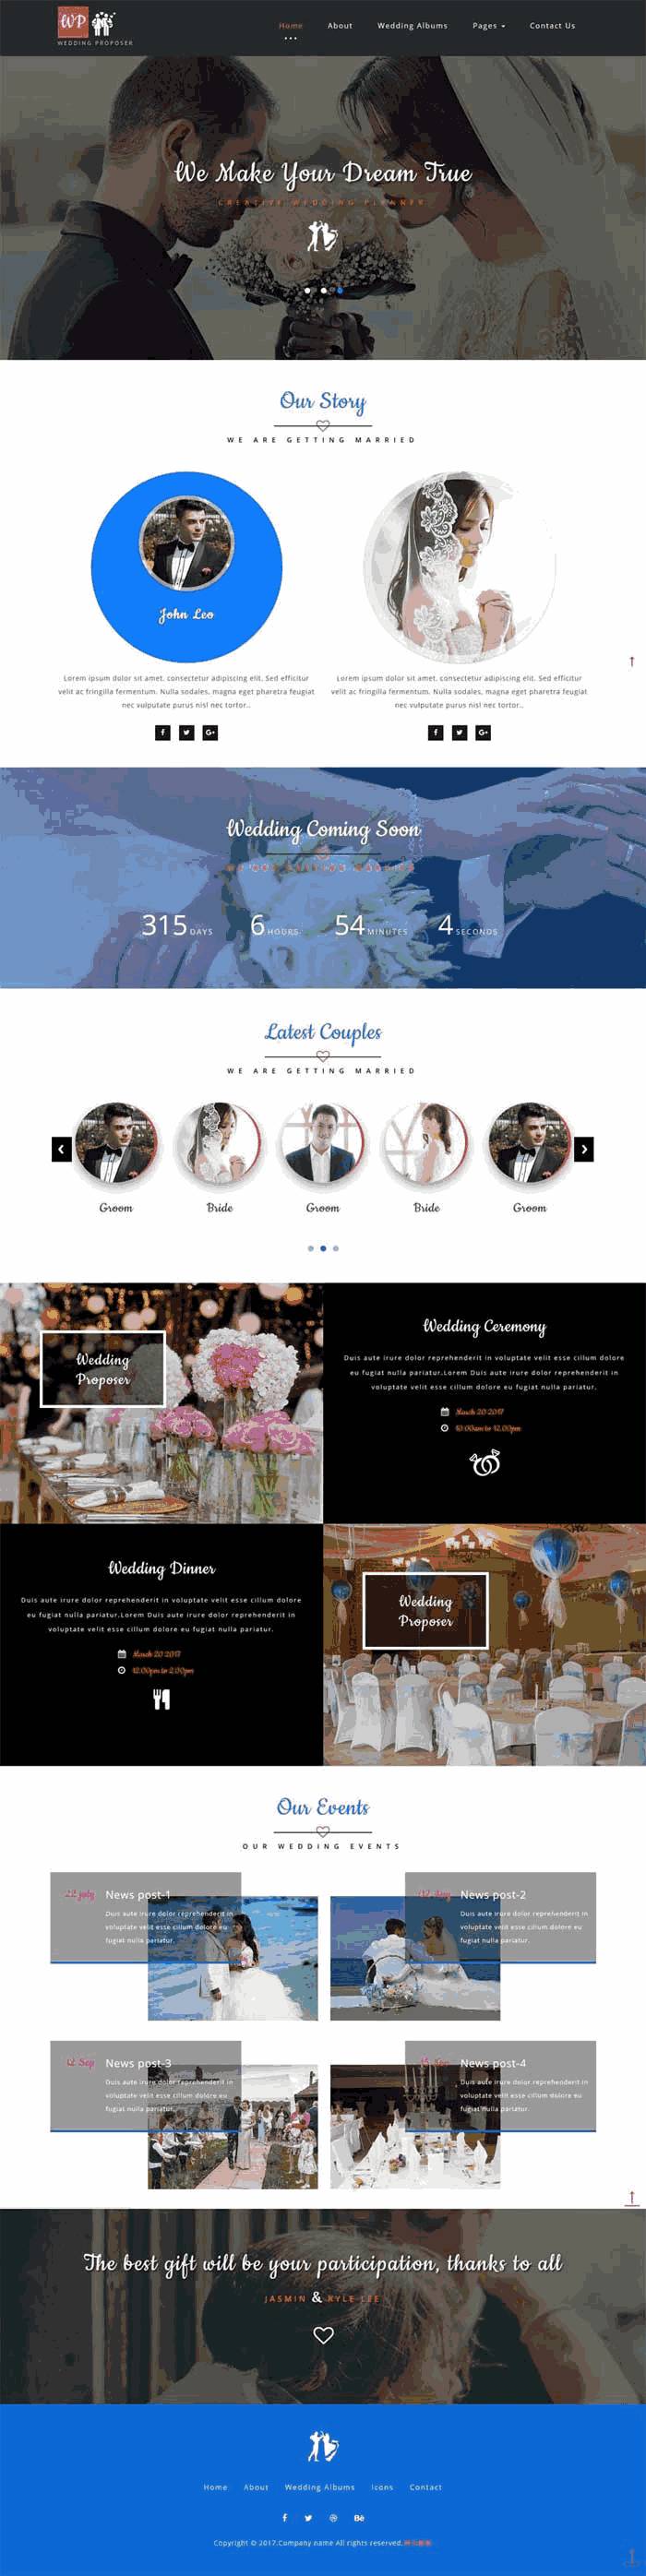 简单大气的婚纱摄影婚庆公司网站Wordpress模板（带手机版）效果图